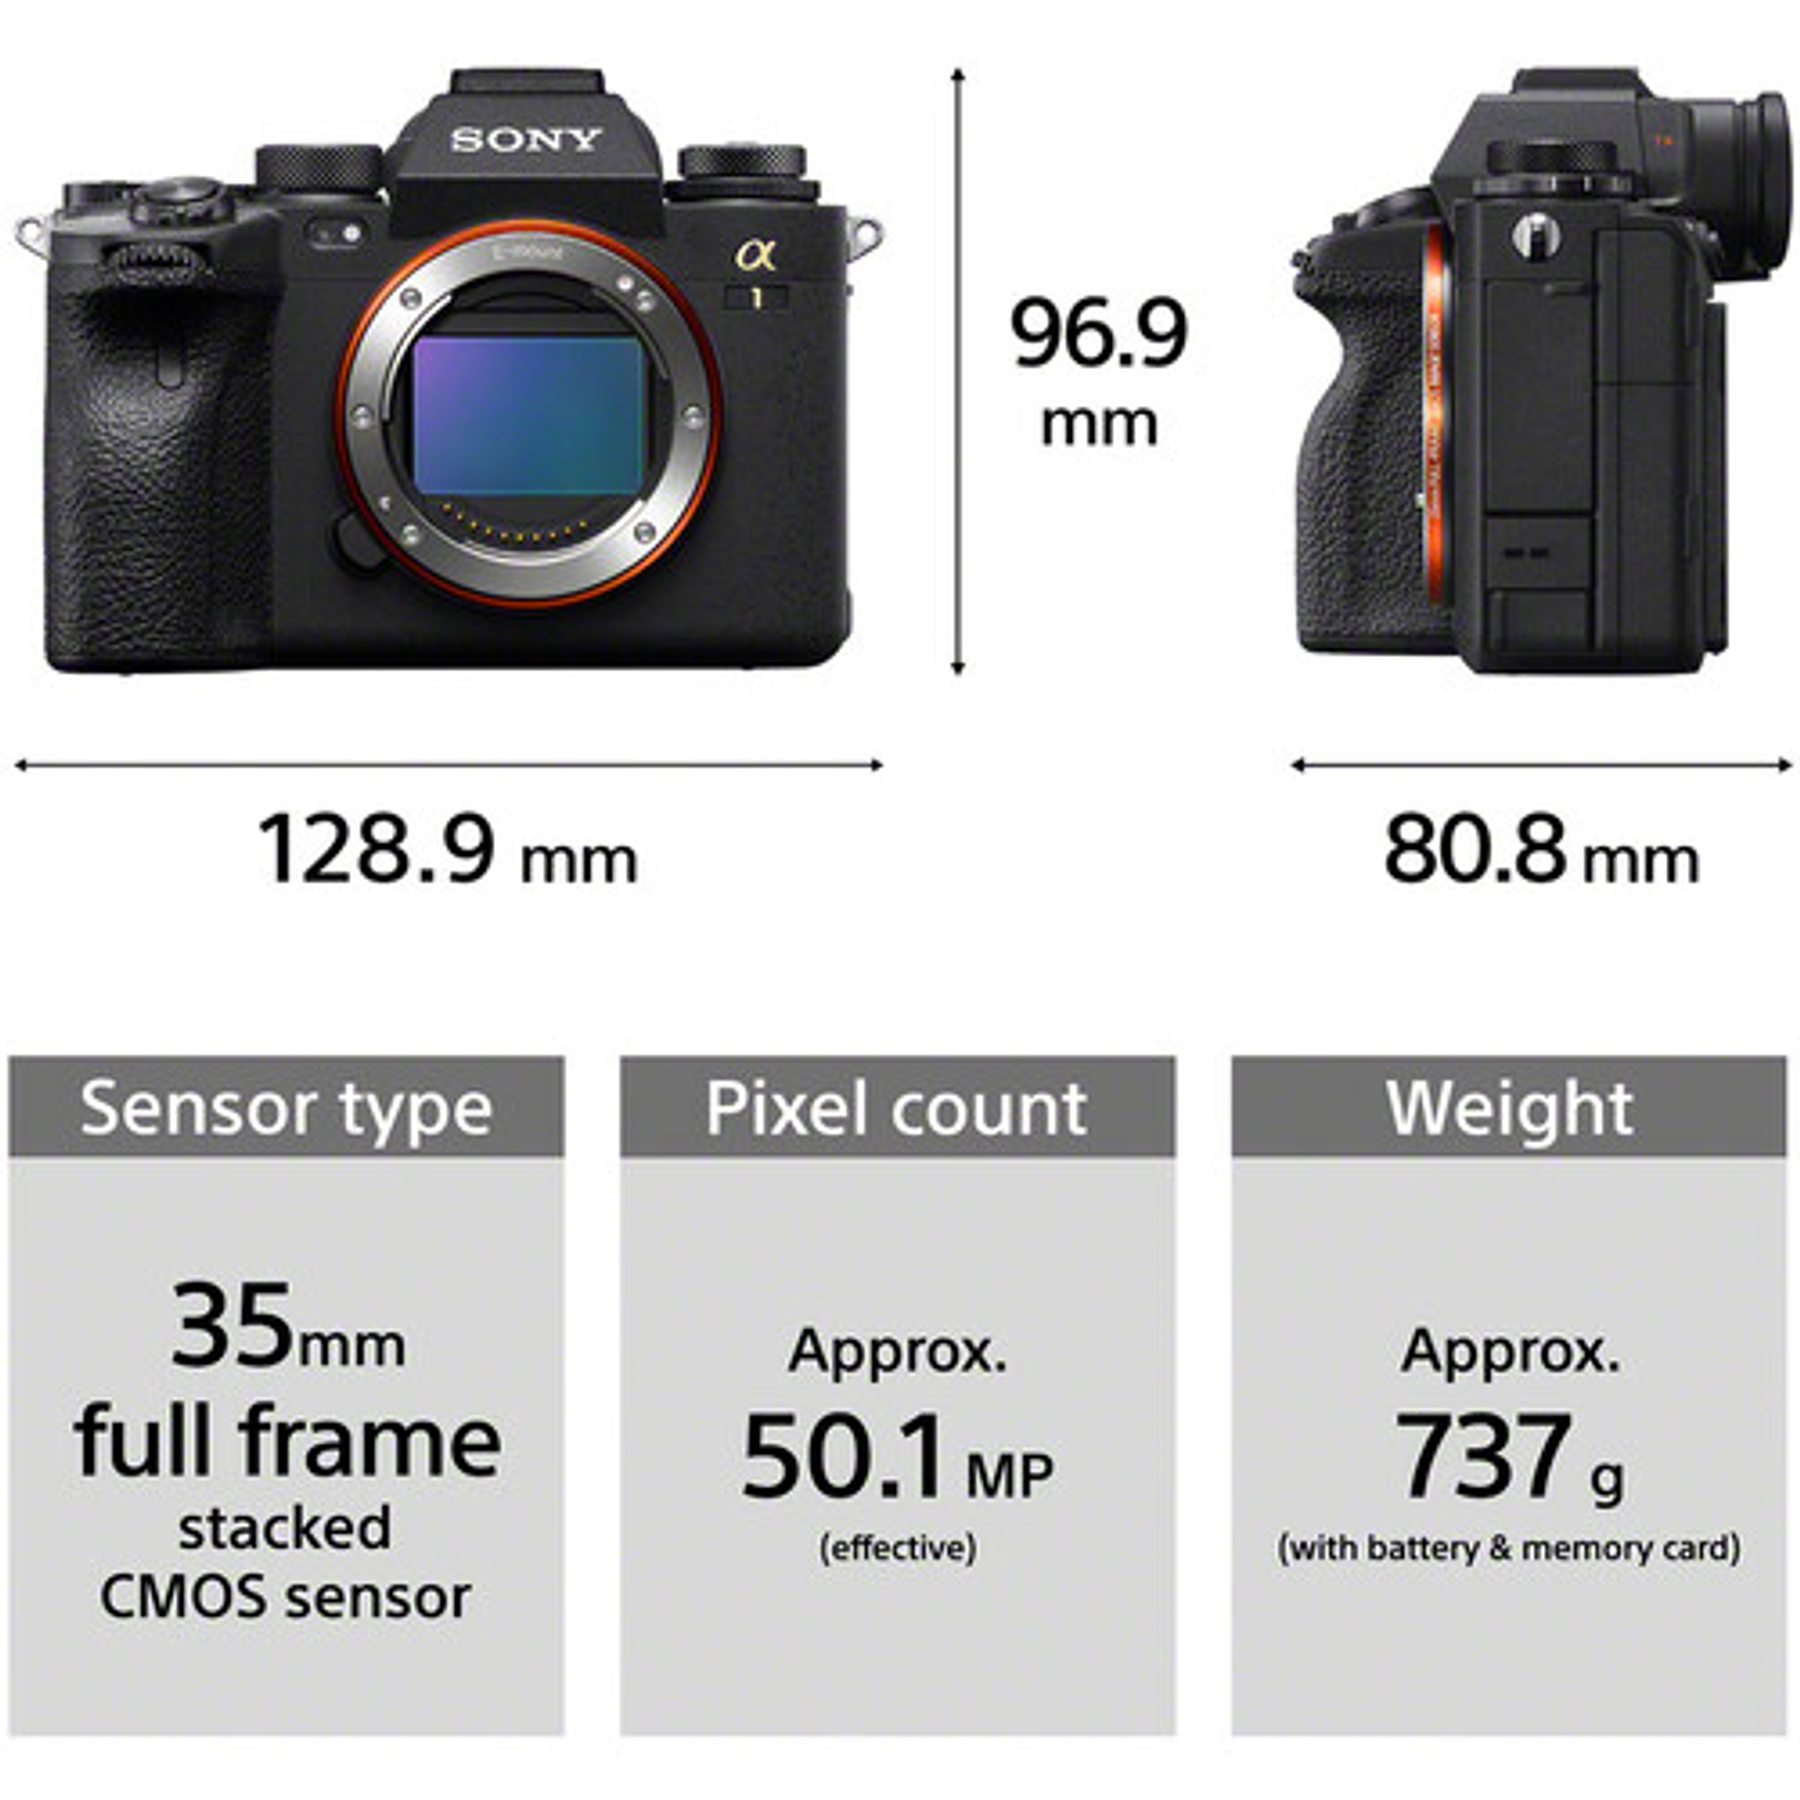 Sony A1: La cámara profesional más avanzada del momento